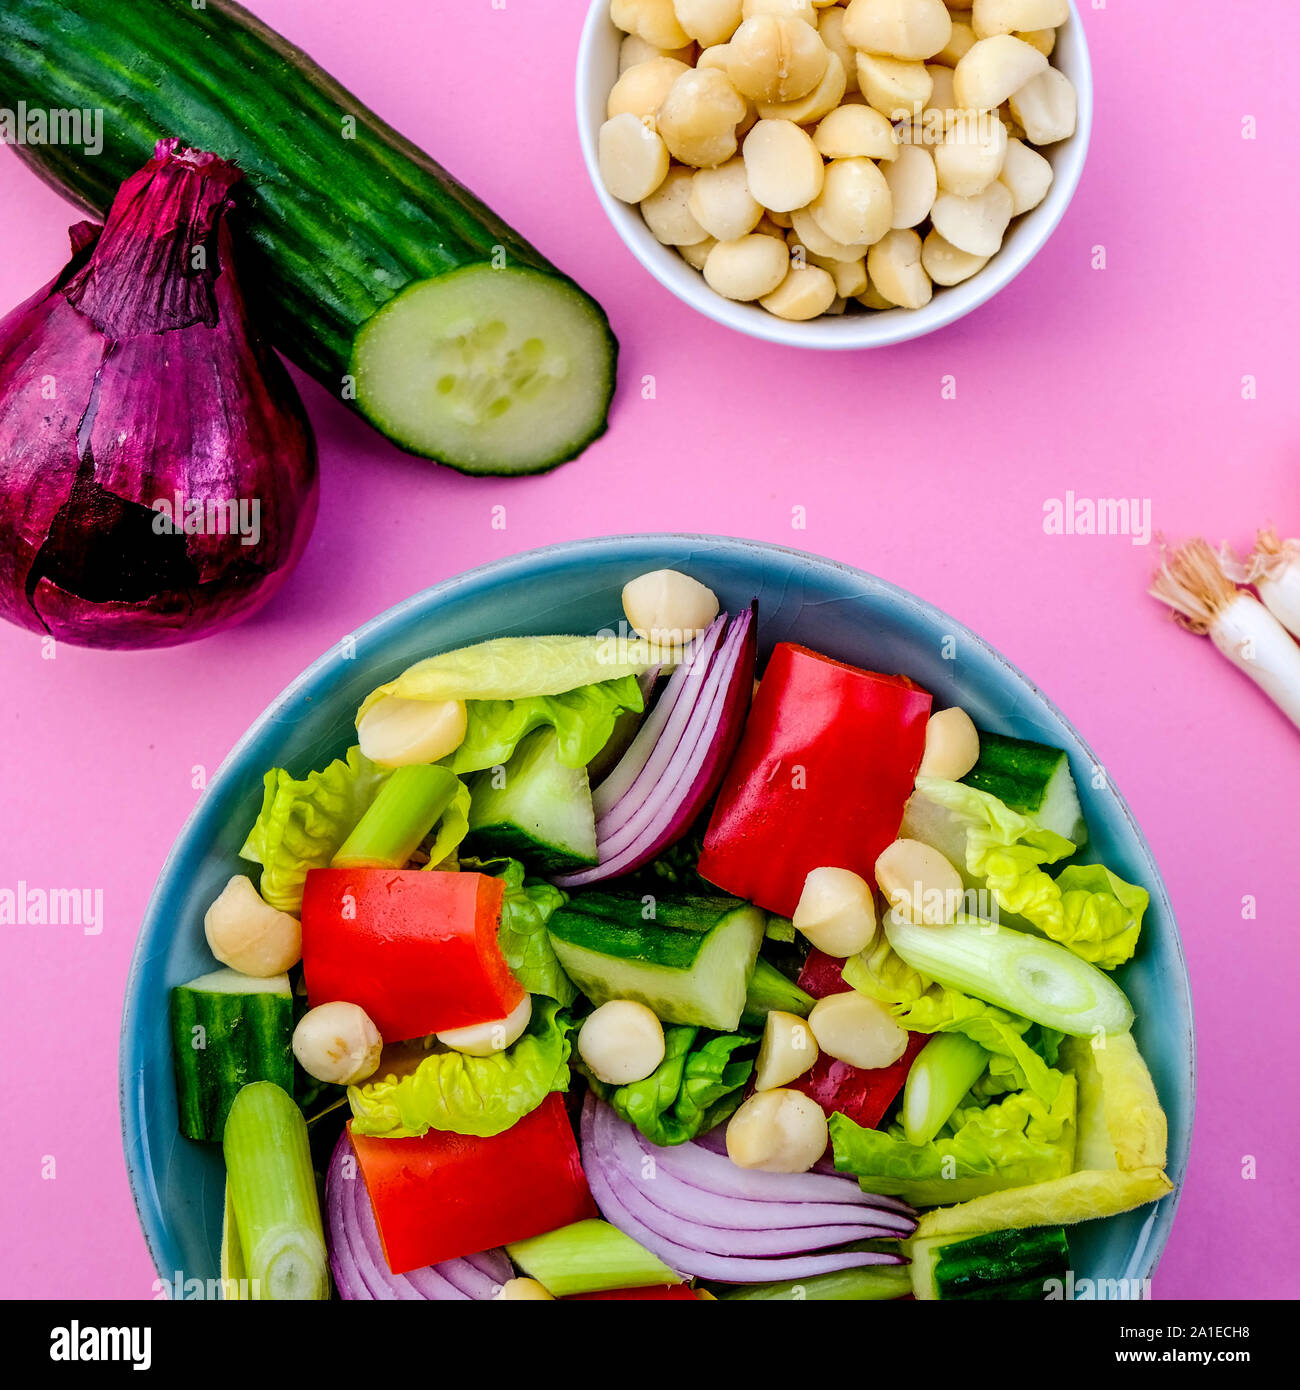 Gesunde vegetarische oder vegane Macadamianuss Salat mit Paprika, Chickory, Frühlingszwiebeln, Gem Salat und rote Zwiebel Stockfoto